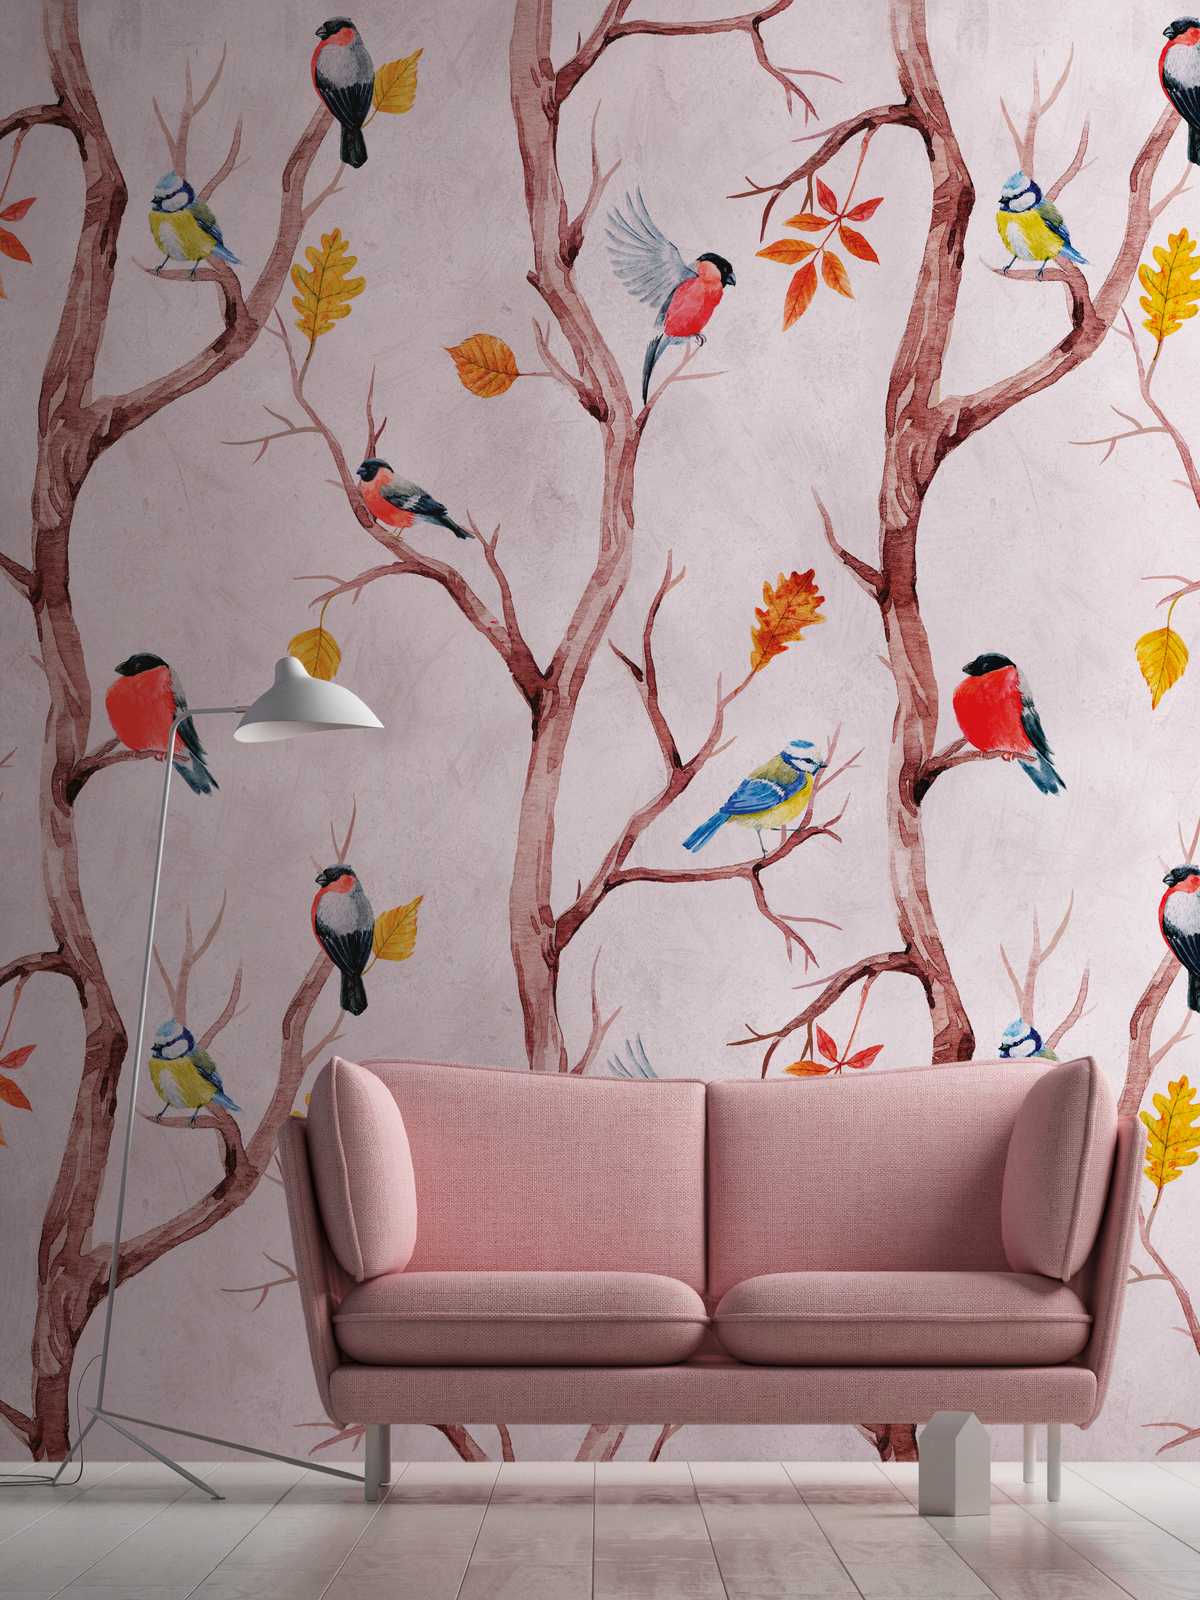             Behang nieuwigheid - motiefbehang met vogelmotief in aquarelstijl
        